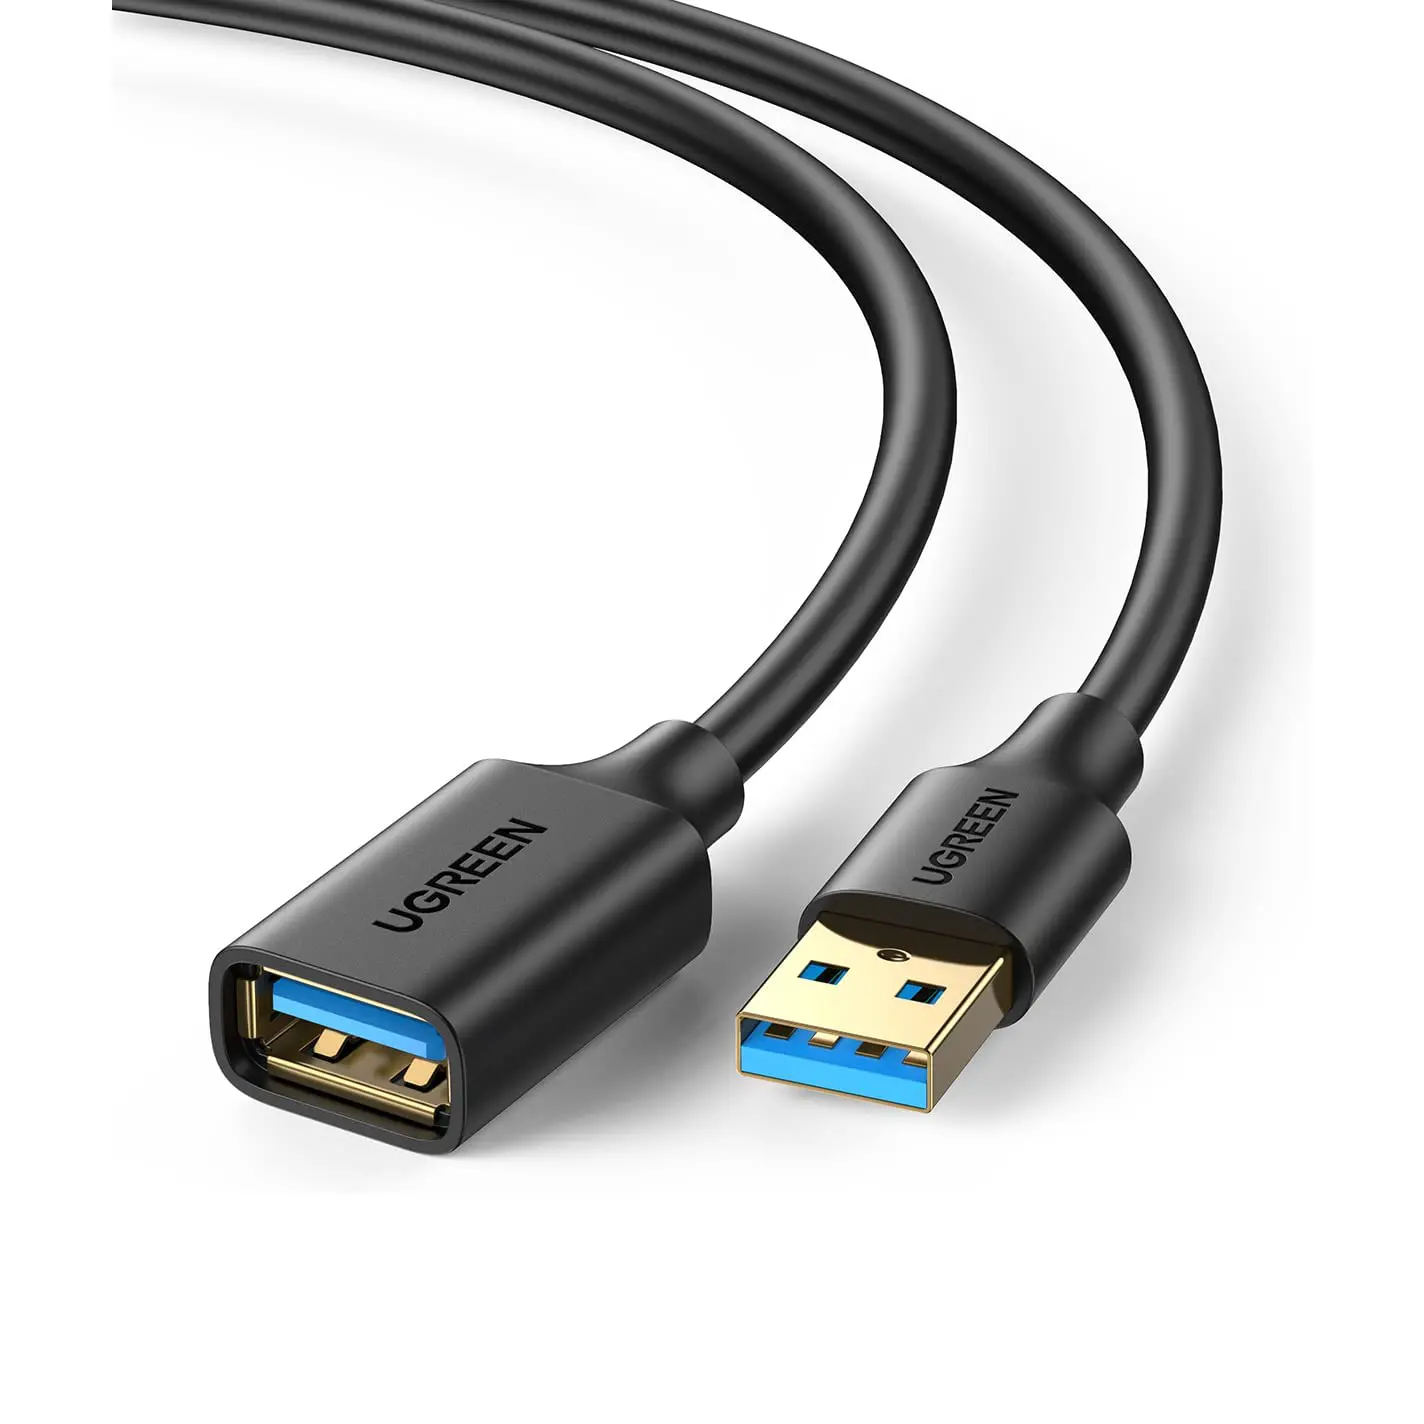 UGREEN Cáp Nối Dài USB 3.0 Cáp Nối Dài Đầu Đực Sang Đầu Cái Cáp USB Truyền Dữ Liệu Tốc Độ Cao